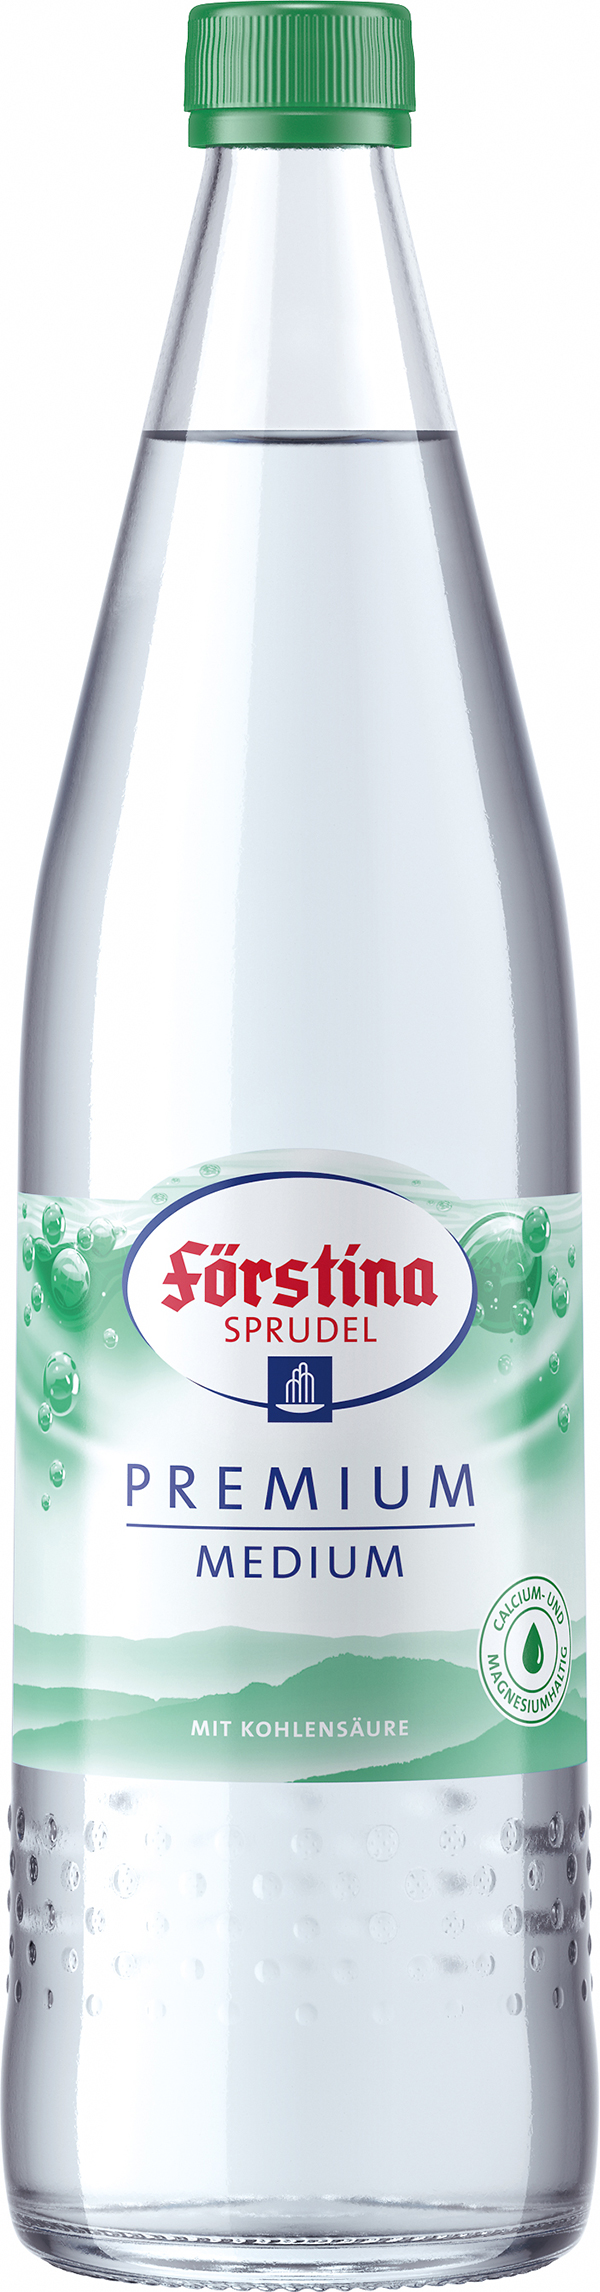 Förstina Sprudel Premium Medium 12 x 0,7 l